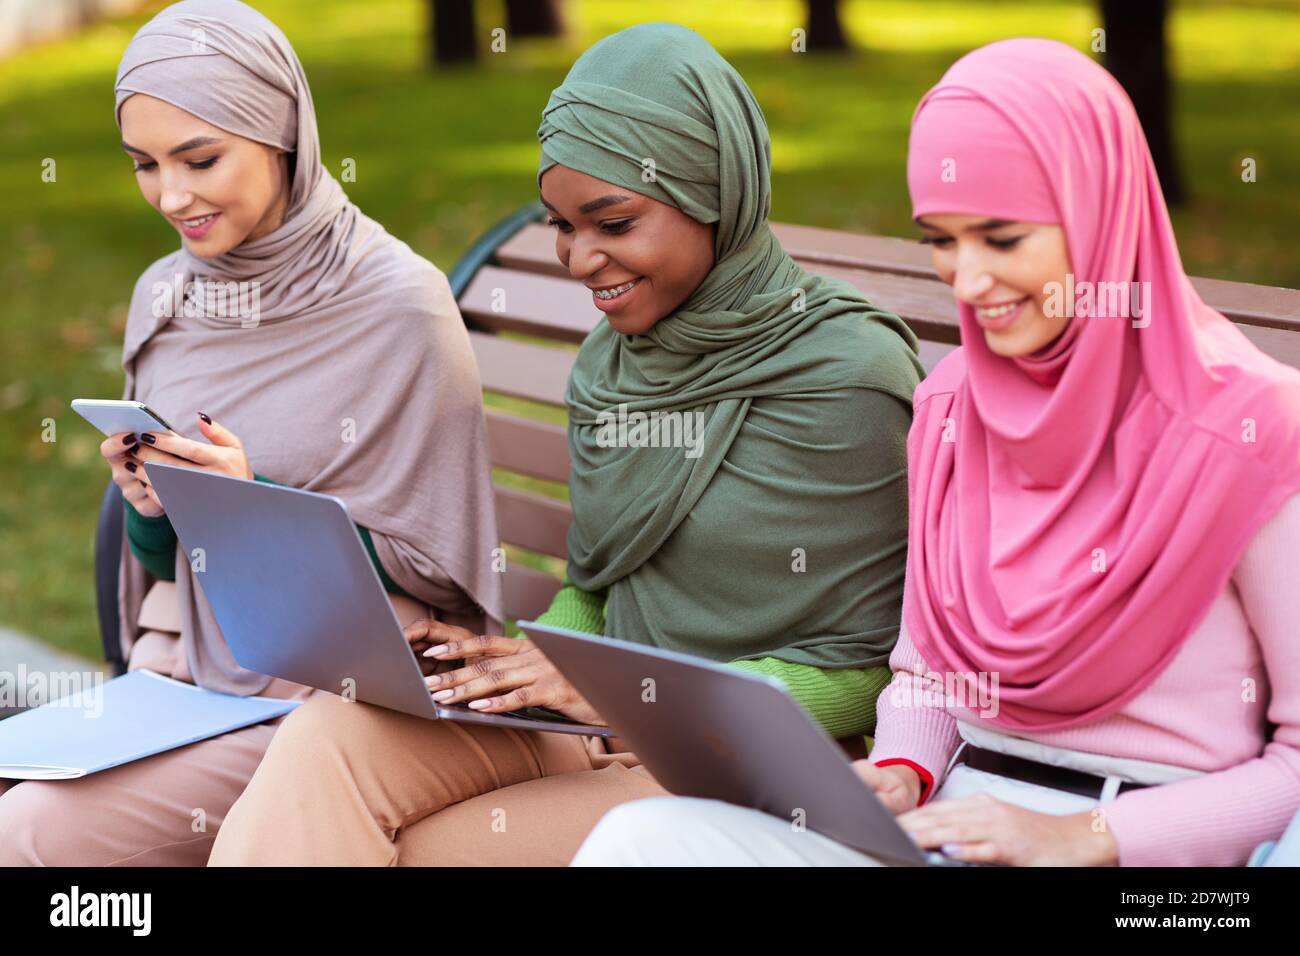 Muslimische Studenten Frauen Mit Gadgets Lernen Online Sitzen Im Park Stockfoto